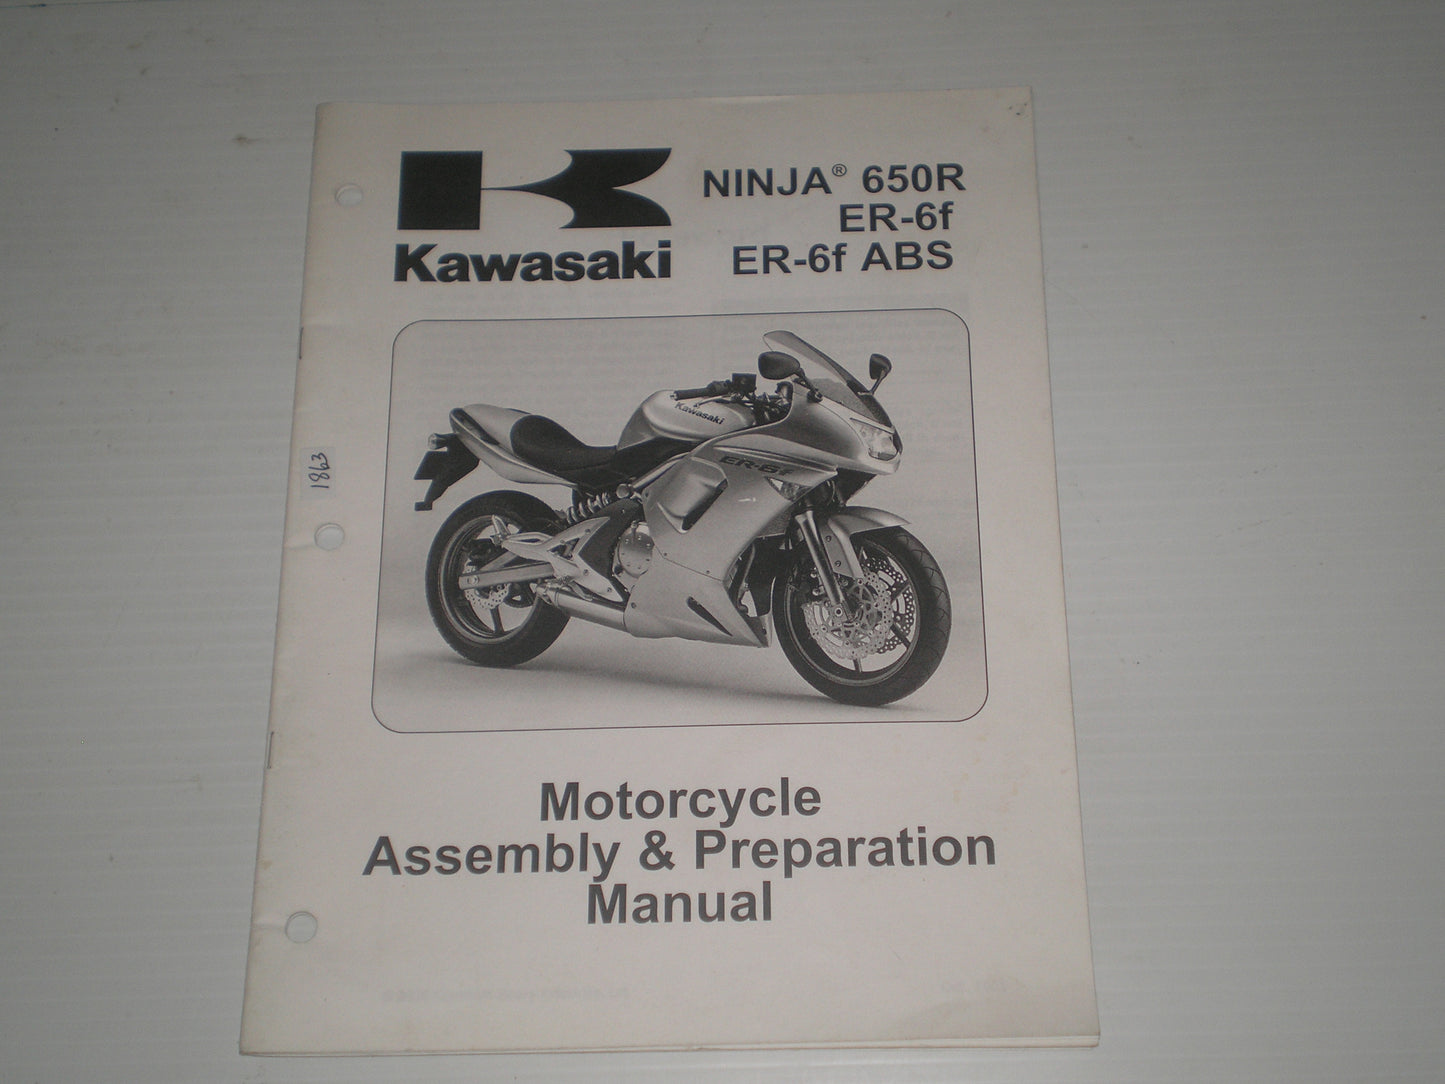 KAWASAKI Ninja 650R / ER-6f / ER-6f ABS / EX650 A6F/B6F 2006  Assembly & Preparation Manual  99931-1462-01  #1863